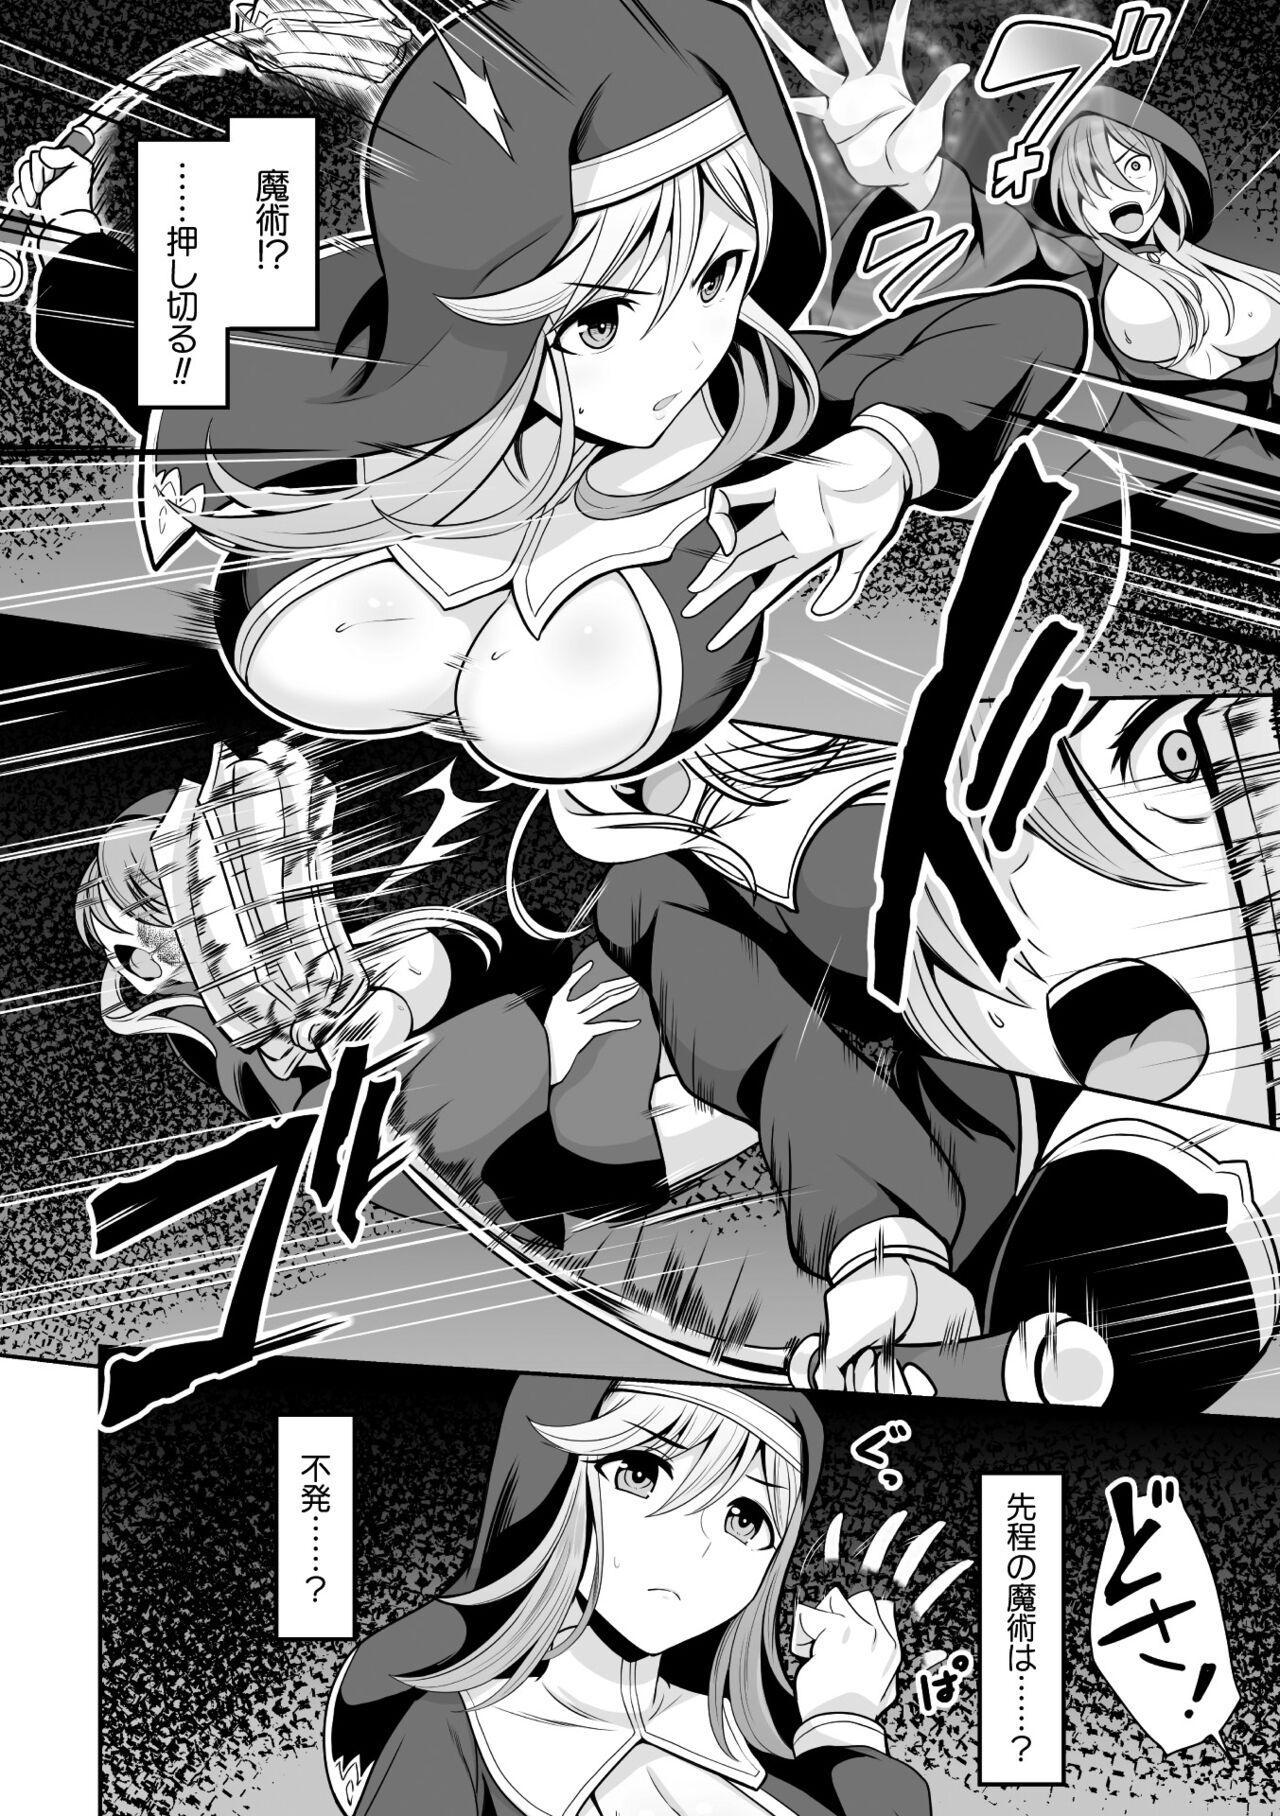 Oldman 2D Comic Magazine Hyoui de! Saimin de! Heroine Inranka Daisakusen Vol. 2 Consolo - Page 4